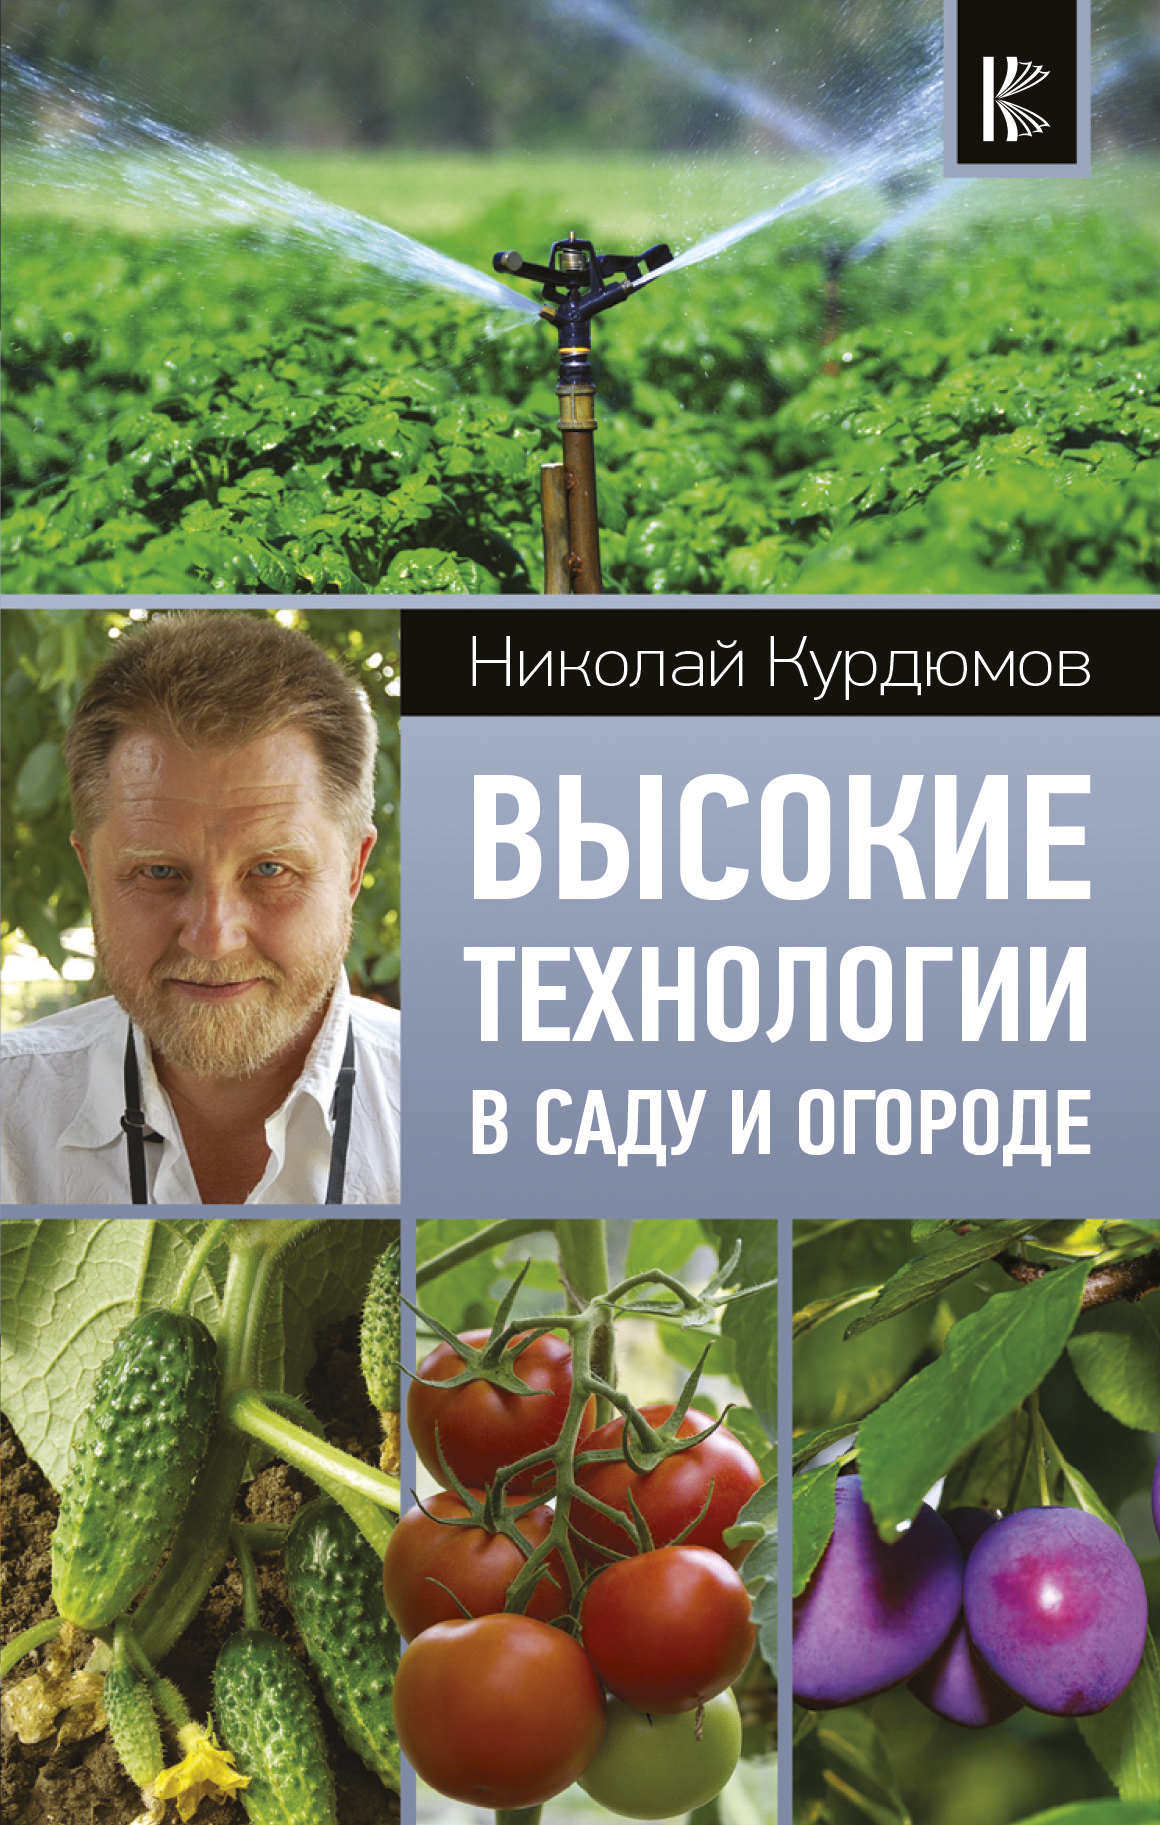 Курдюмов Николай Иванович Высокие технологии в саду и огороде - страница 0